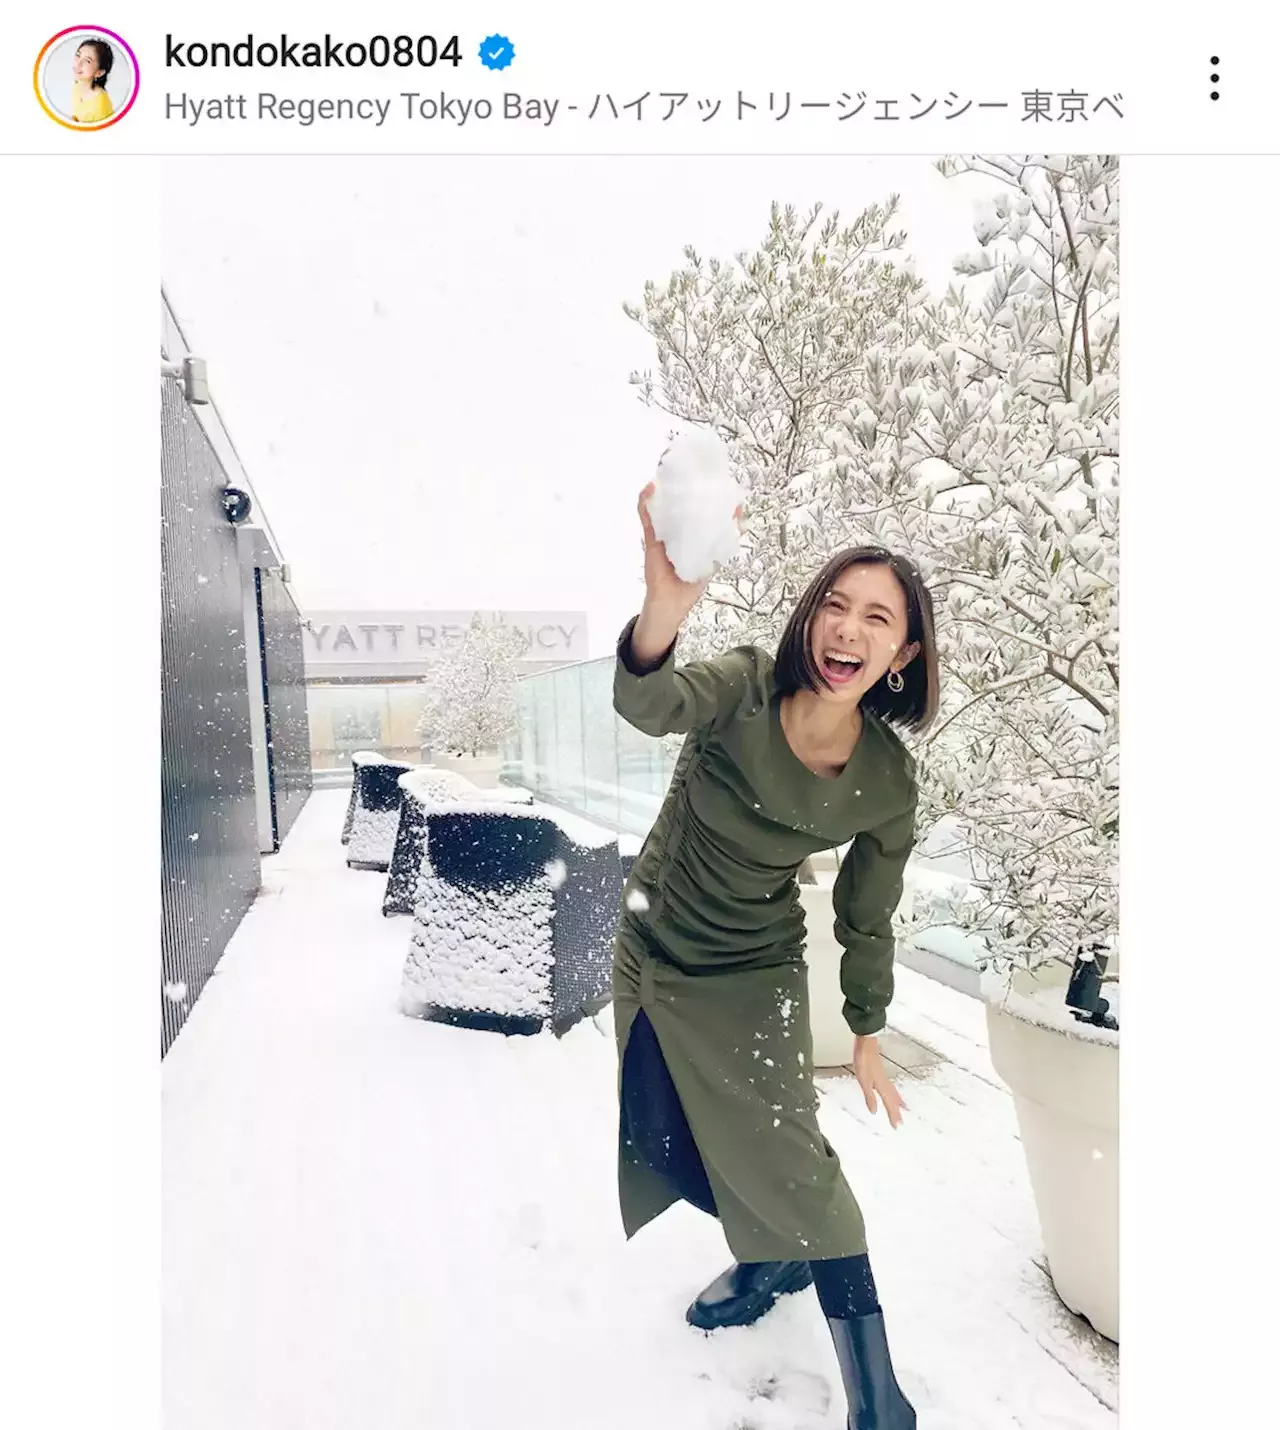 ｔｂｓ近藤夏子アナ 積雪ではしゃぐオフショットに テンション高い 何とも映えます 芸能ニュース ニュース